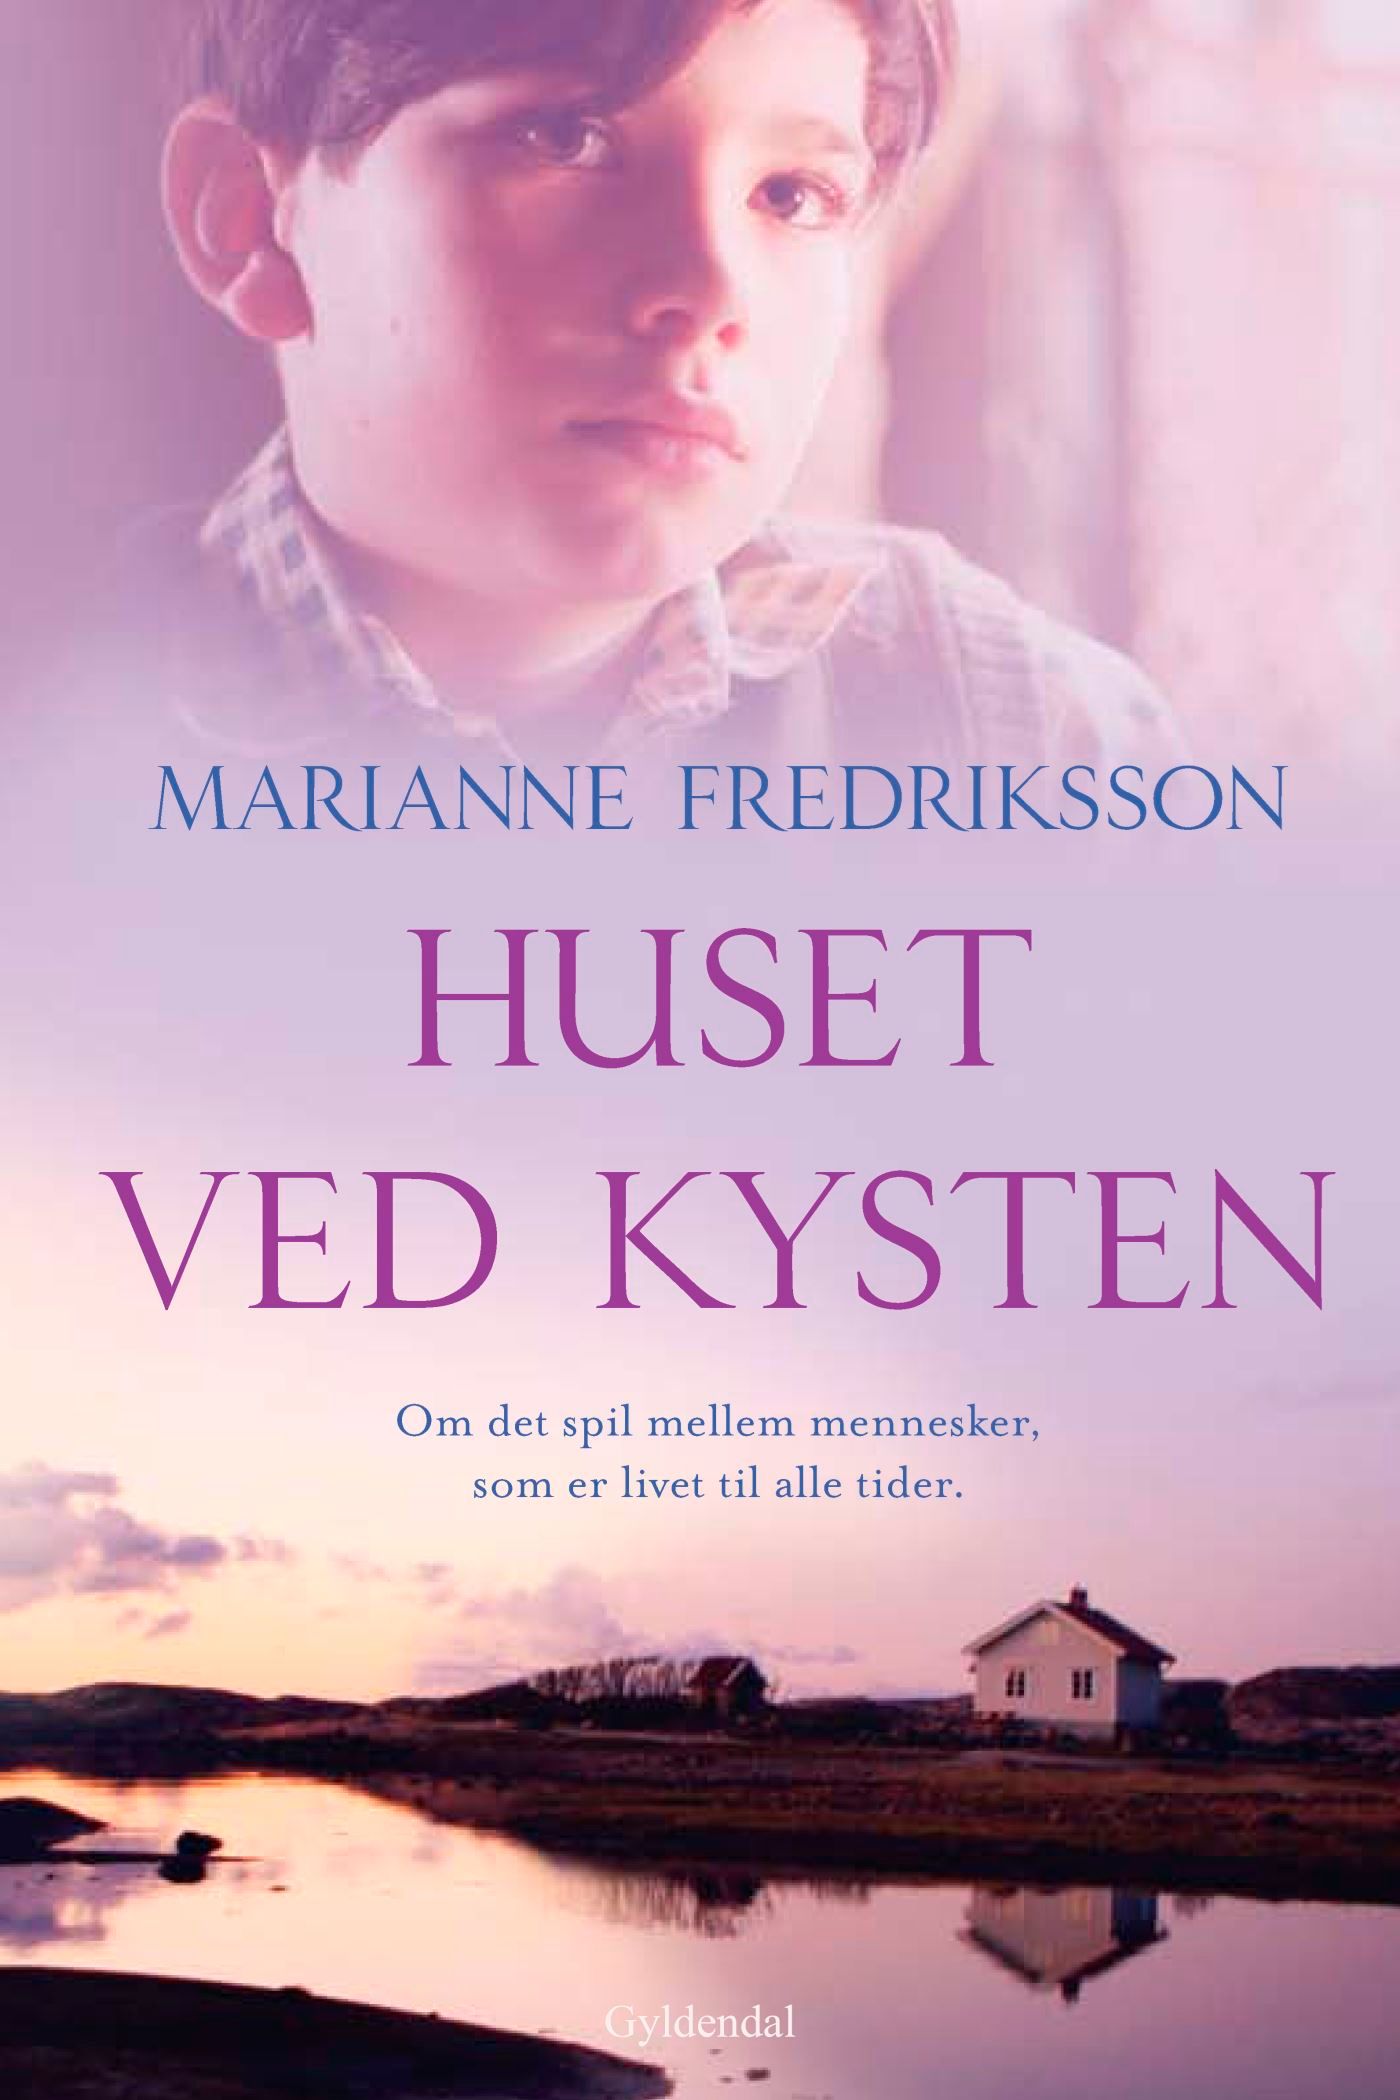 Huset ved kysten, e-bok av Marianne Fredriksson